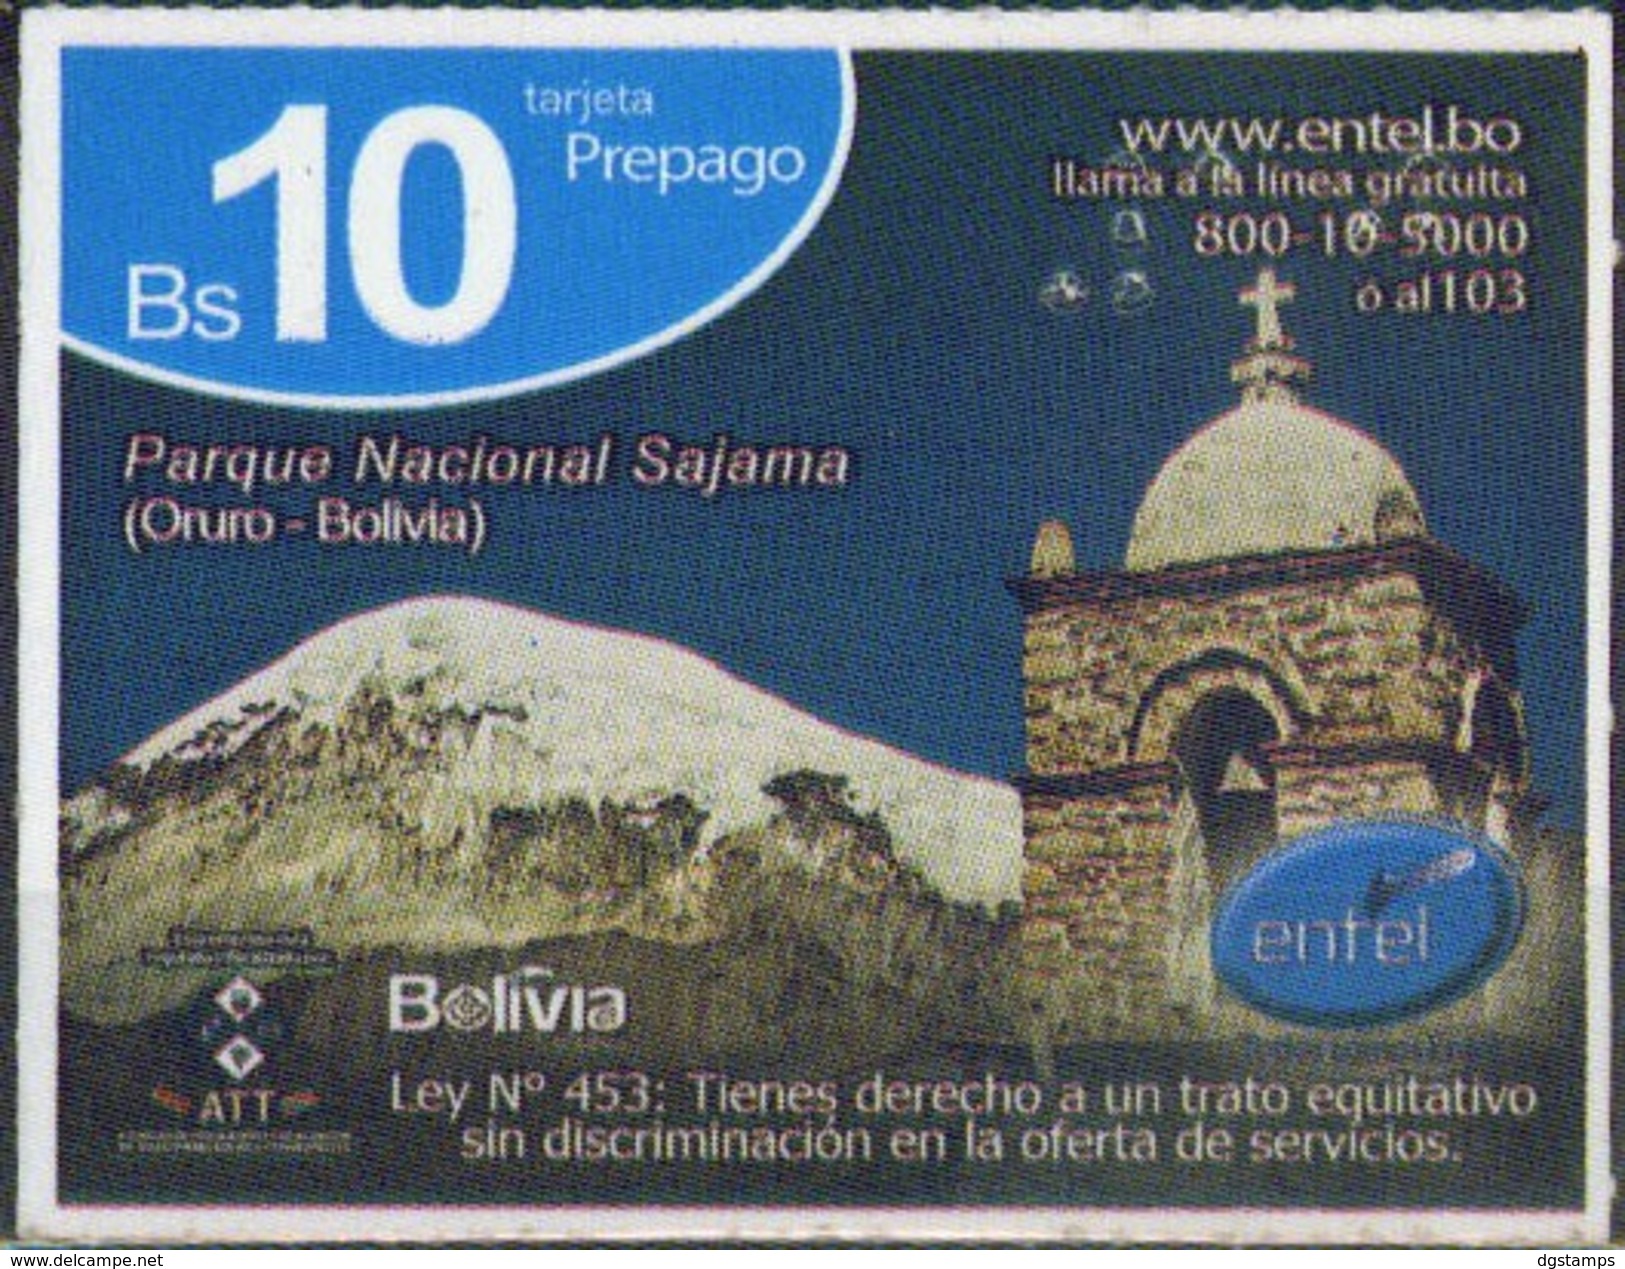 Bolivia 2017- 25-07-2018 Prepago ENTEL. Parque Nacional Sajama. Oruro. - Bolivie